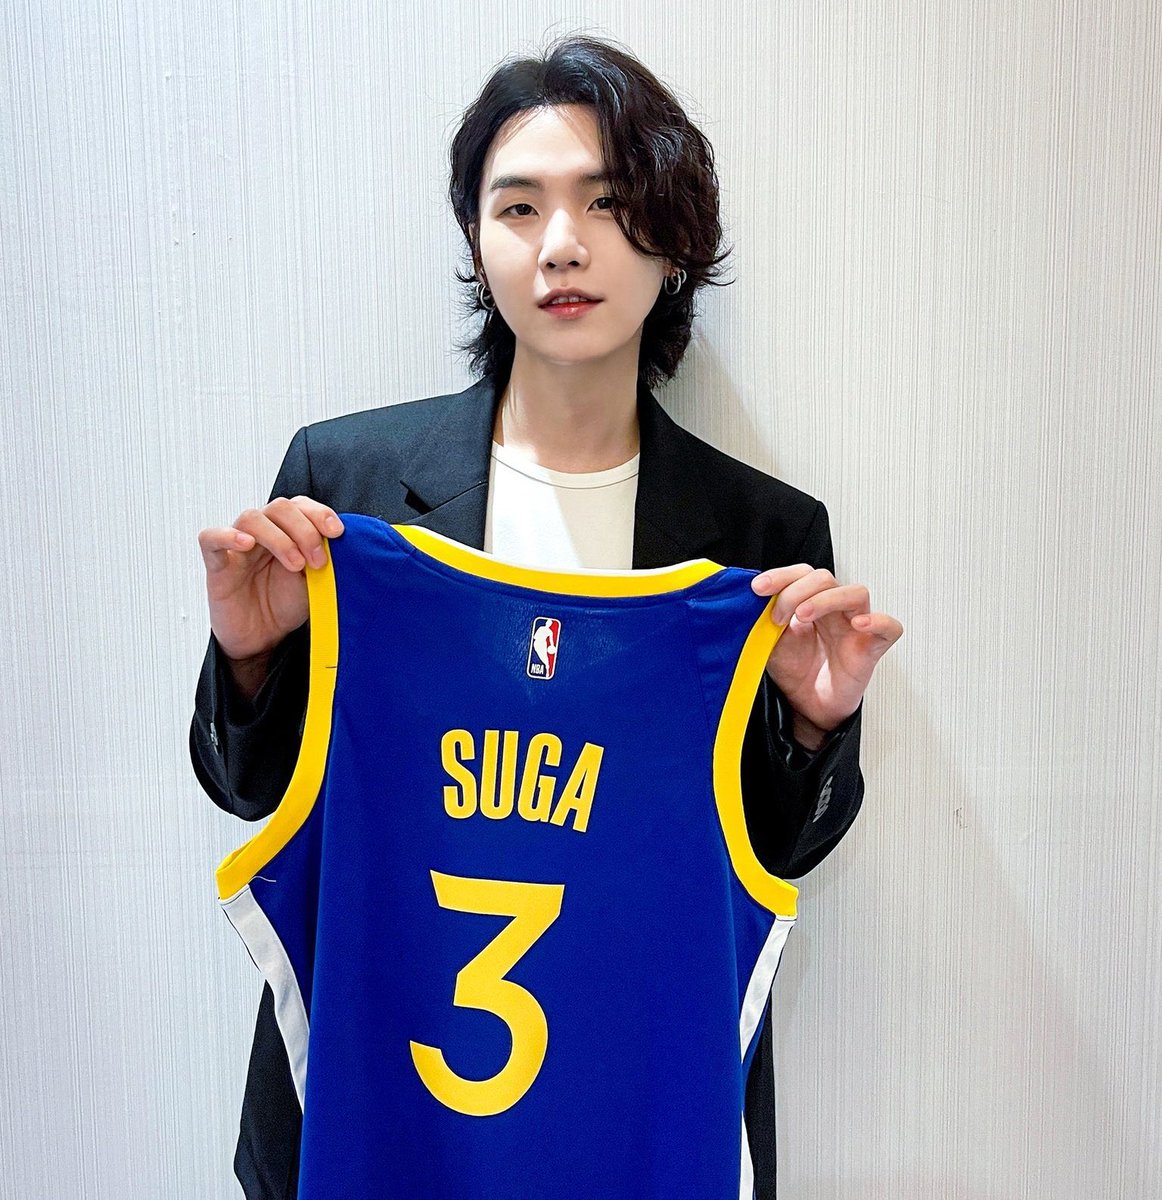 BTS star SUGA named NBA Ambassador